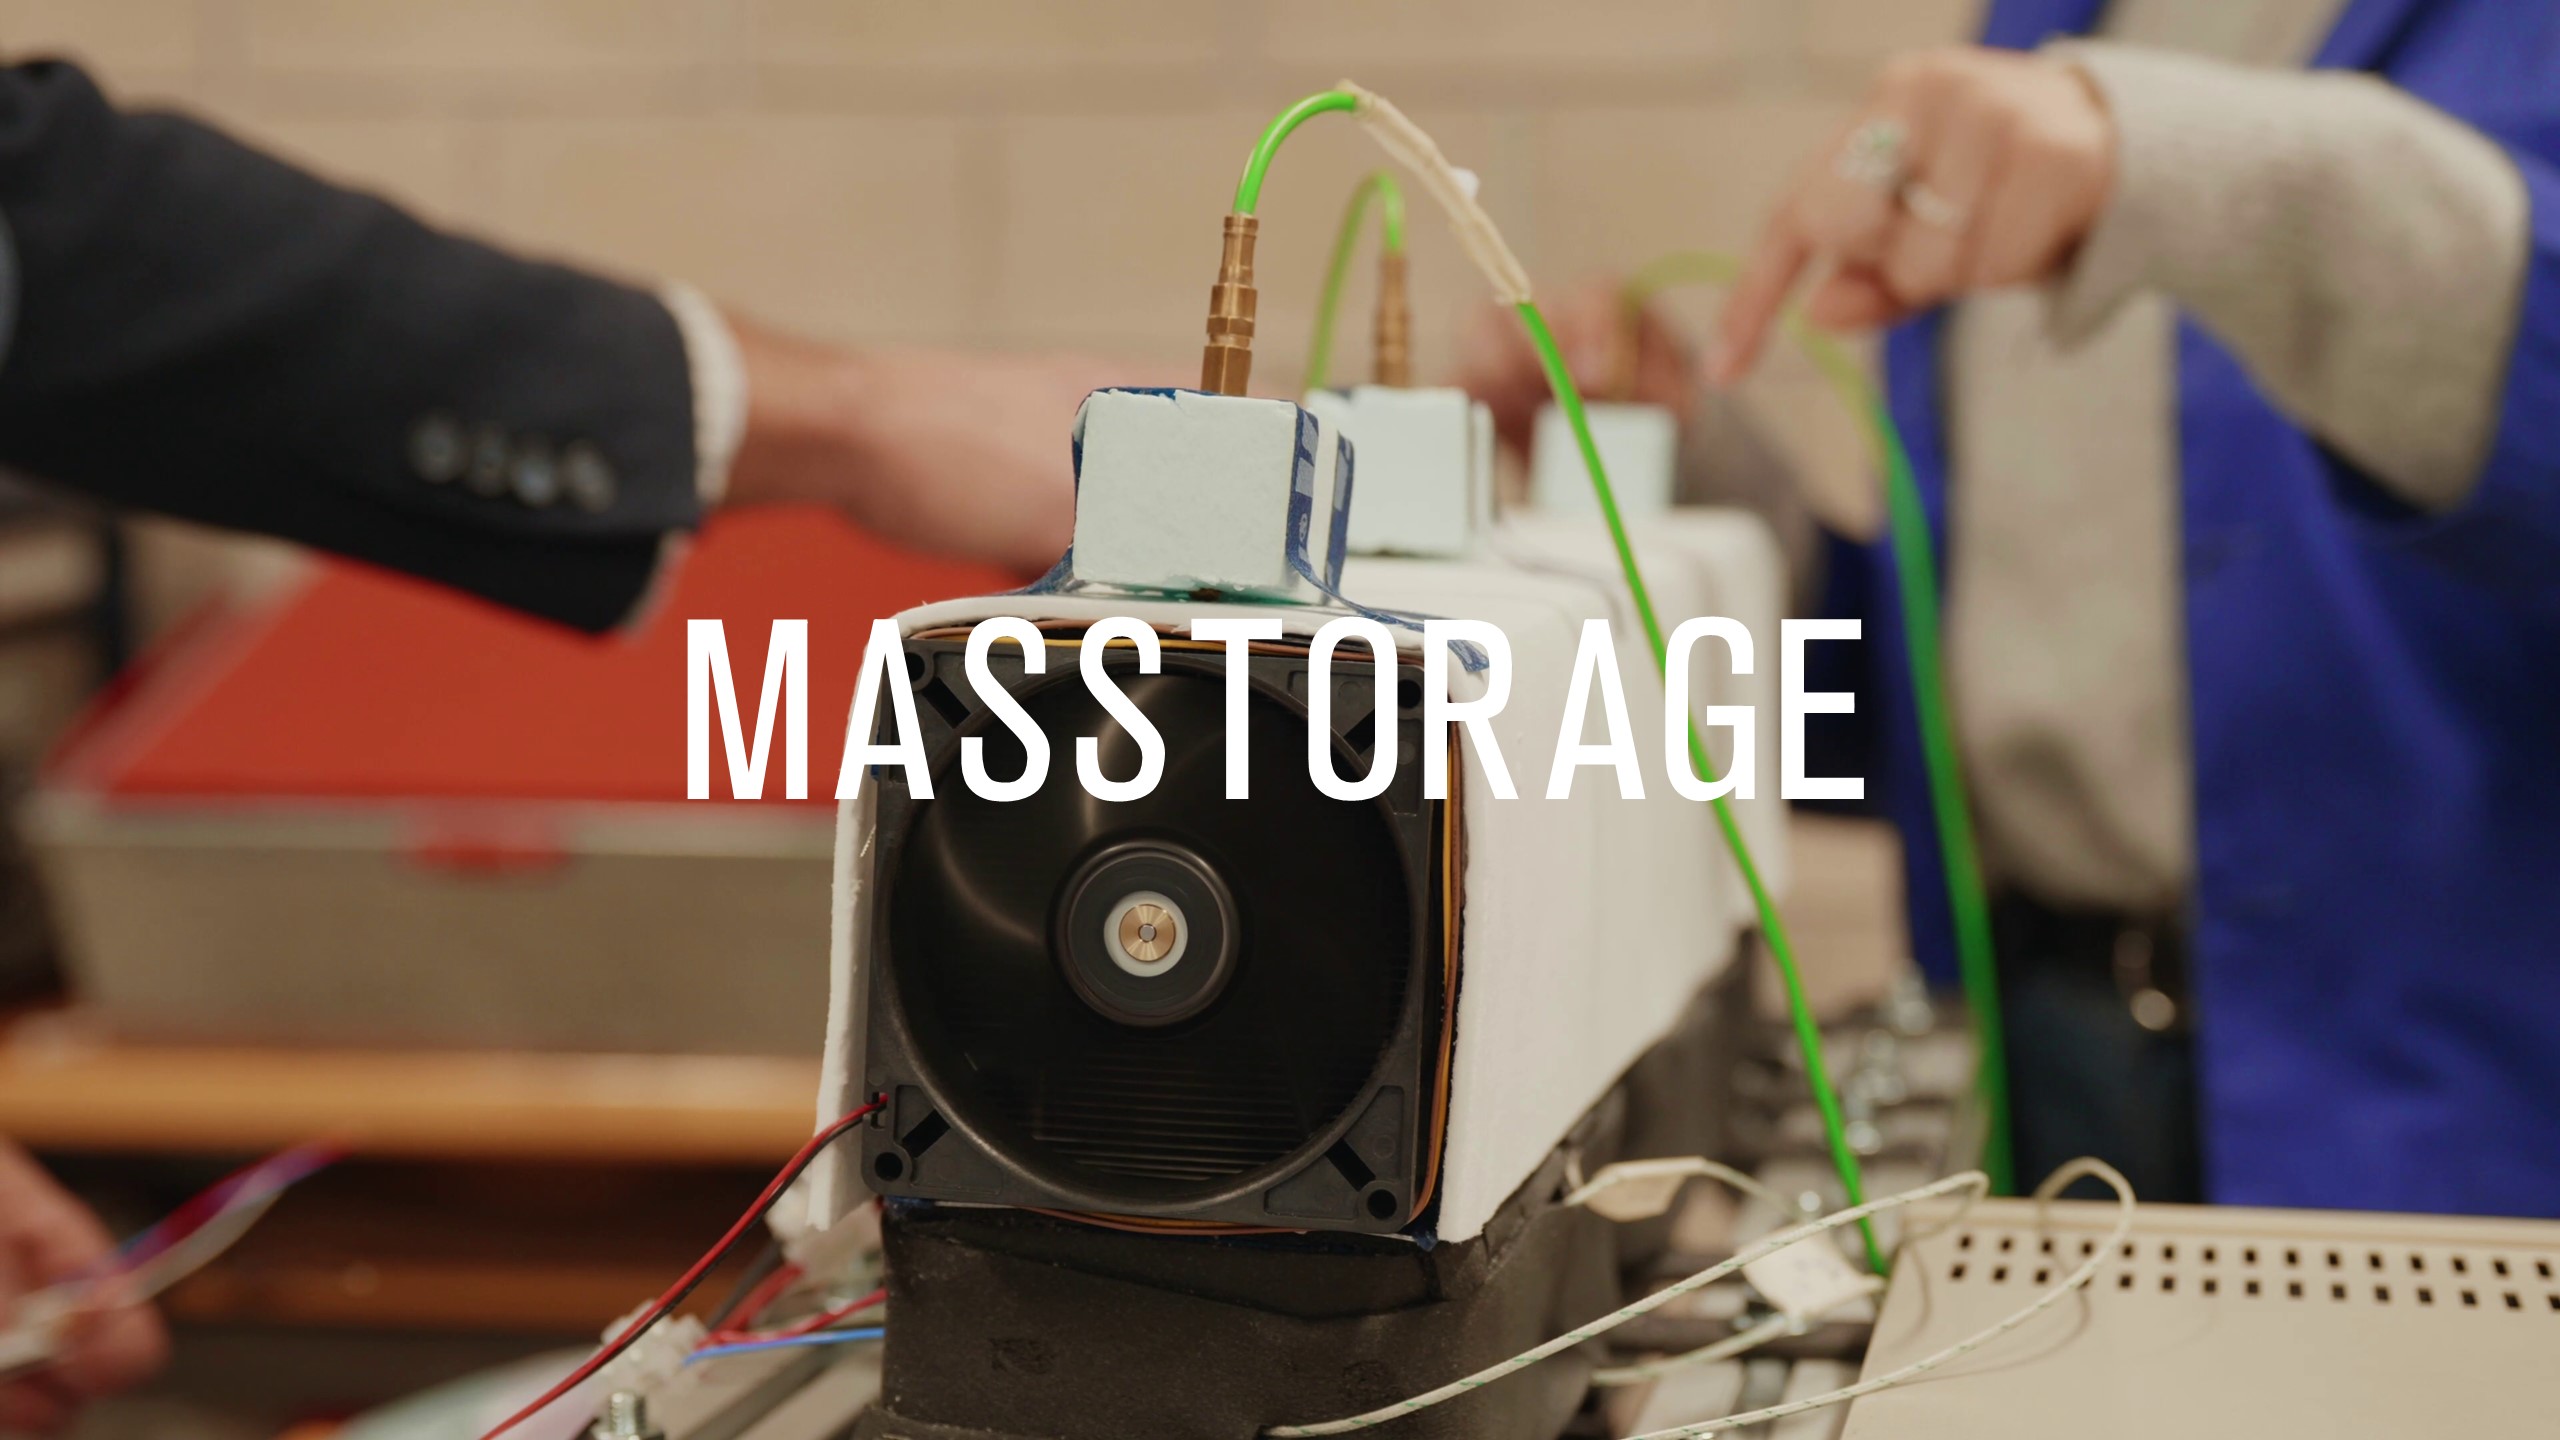 MASSTORAGE proyecto colaborativo almacenamiento energético del futuro